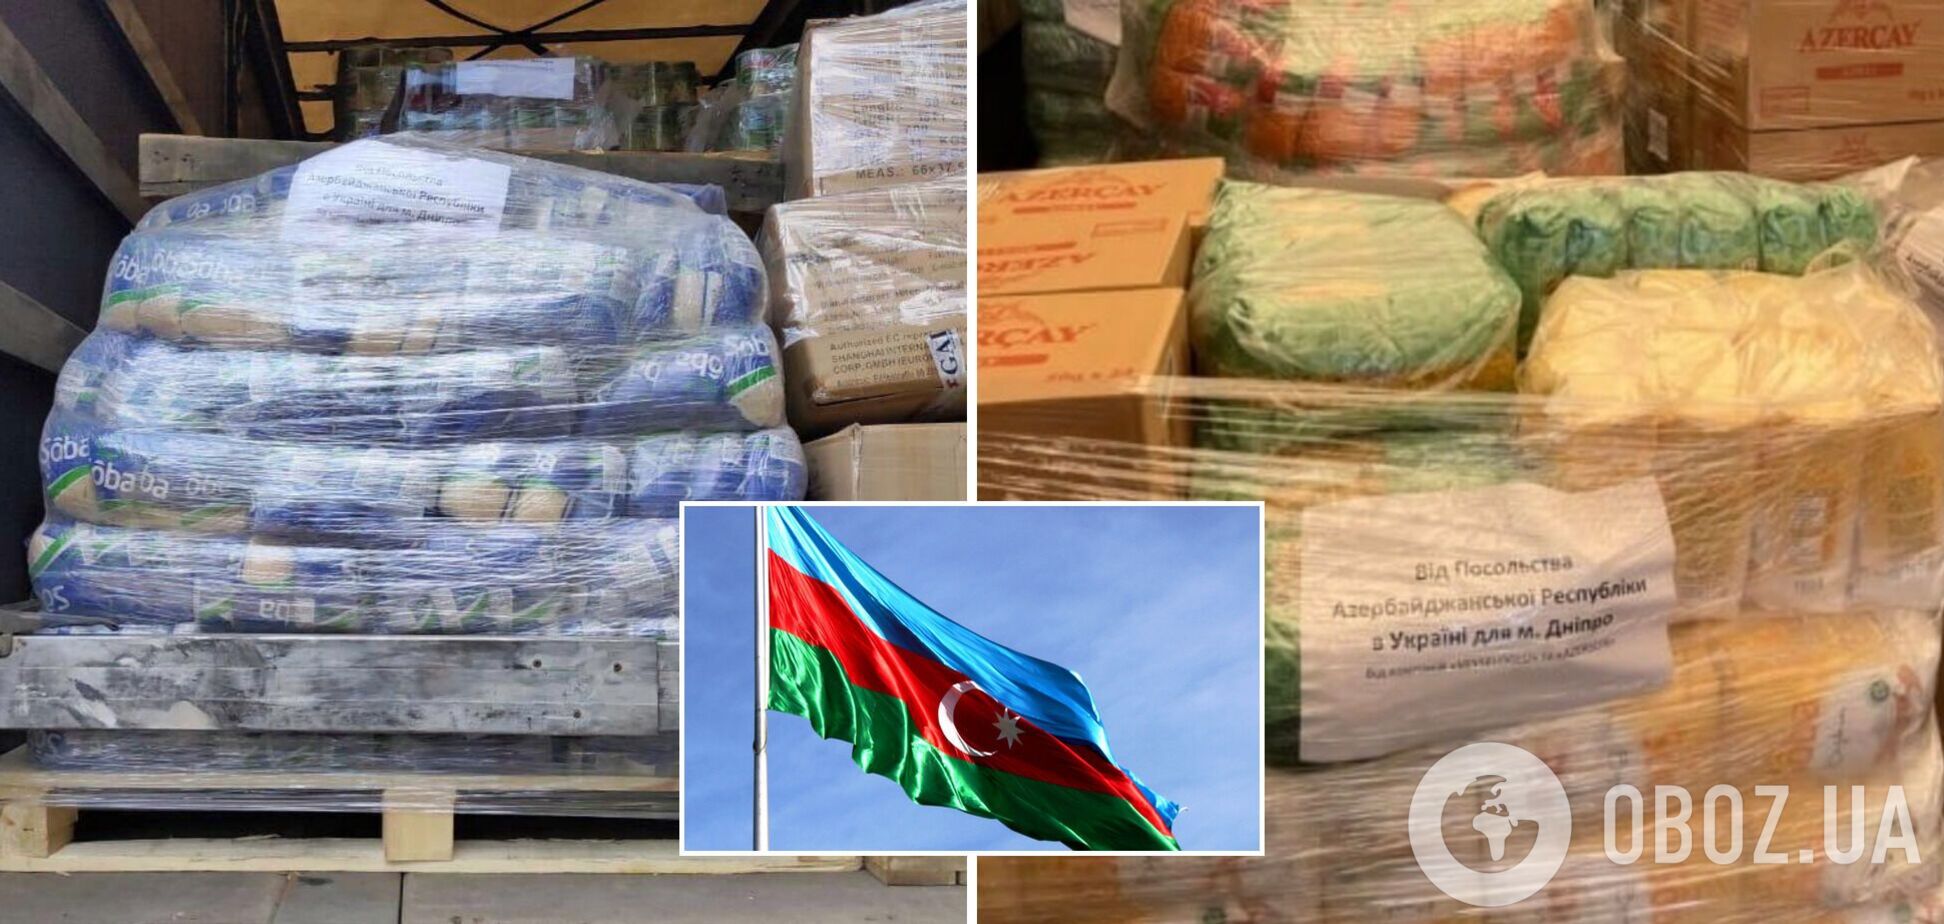 В Днепр поступило 20 т гуманитарной помощи от Азербайджана